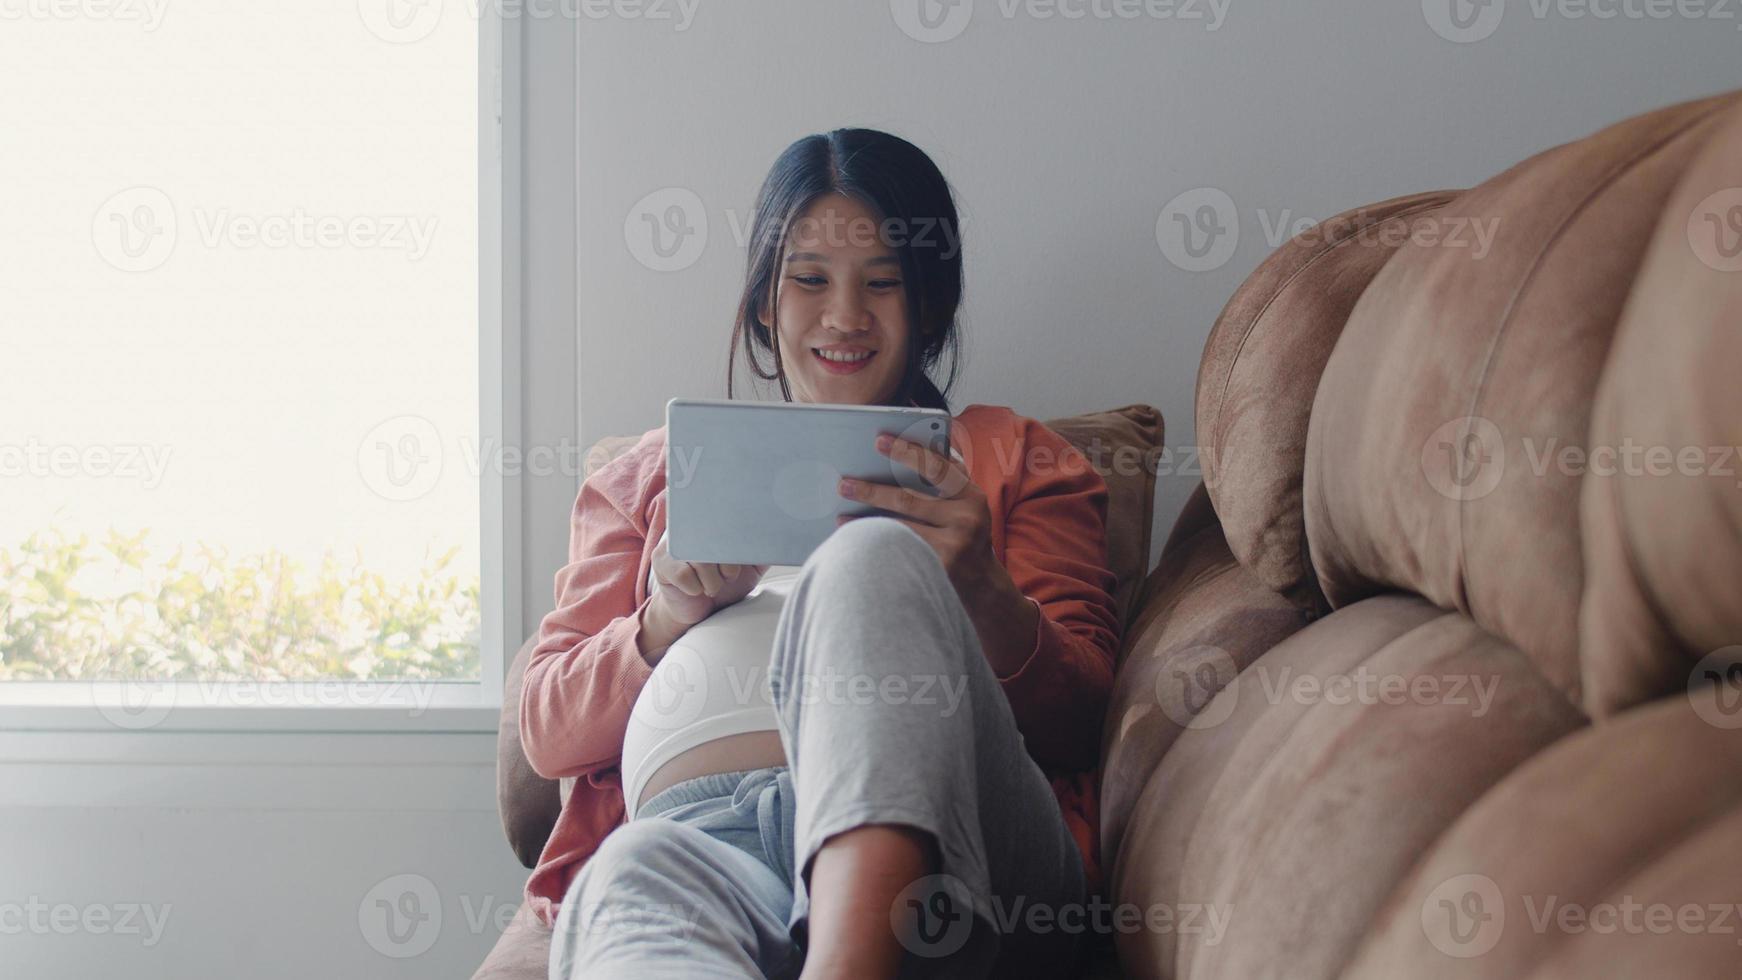 jonge aziatische zwangere vrouw met behulp van tablet zoek zwangerschapsinformatie. moeder voelt zich gelukkig glimlachend positief en vredig terwijl ze voor haar kind zorgt liggend op de bank in de woonkamer thuis concept. foto